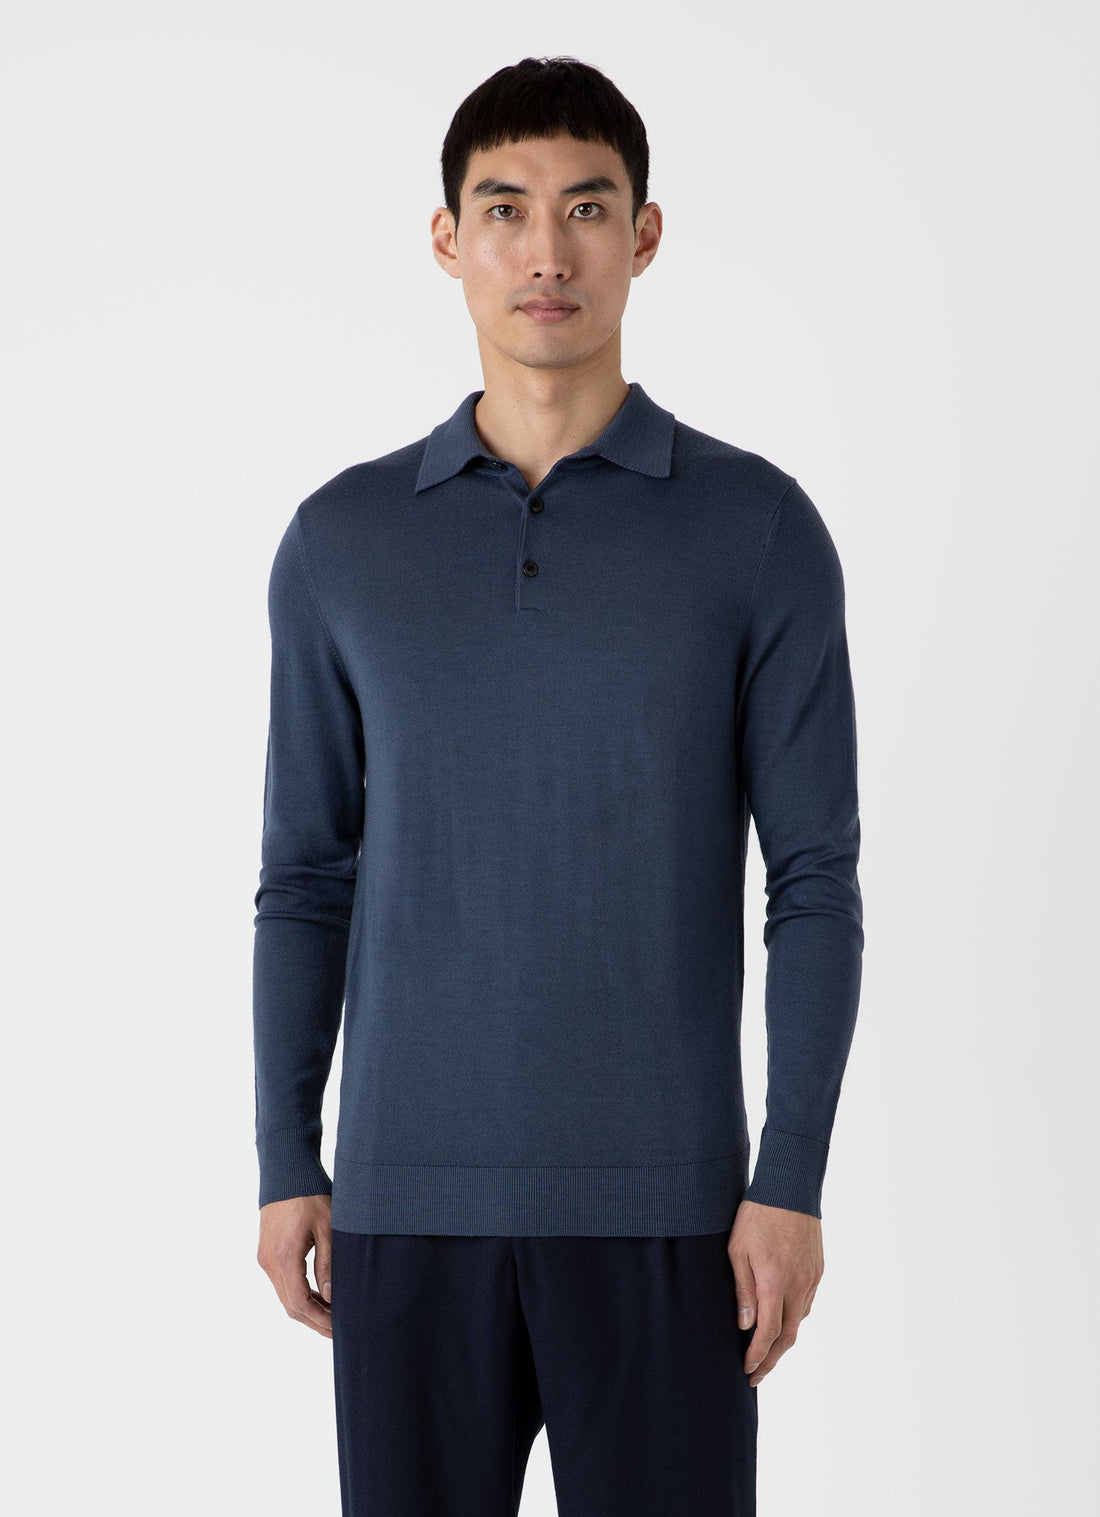 Men's Extra-Fine Merino Polo Shirt in Slate Blue